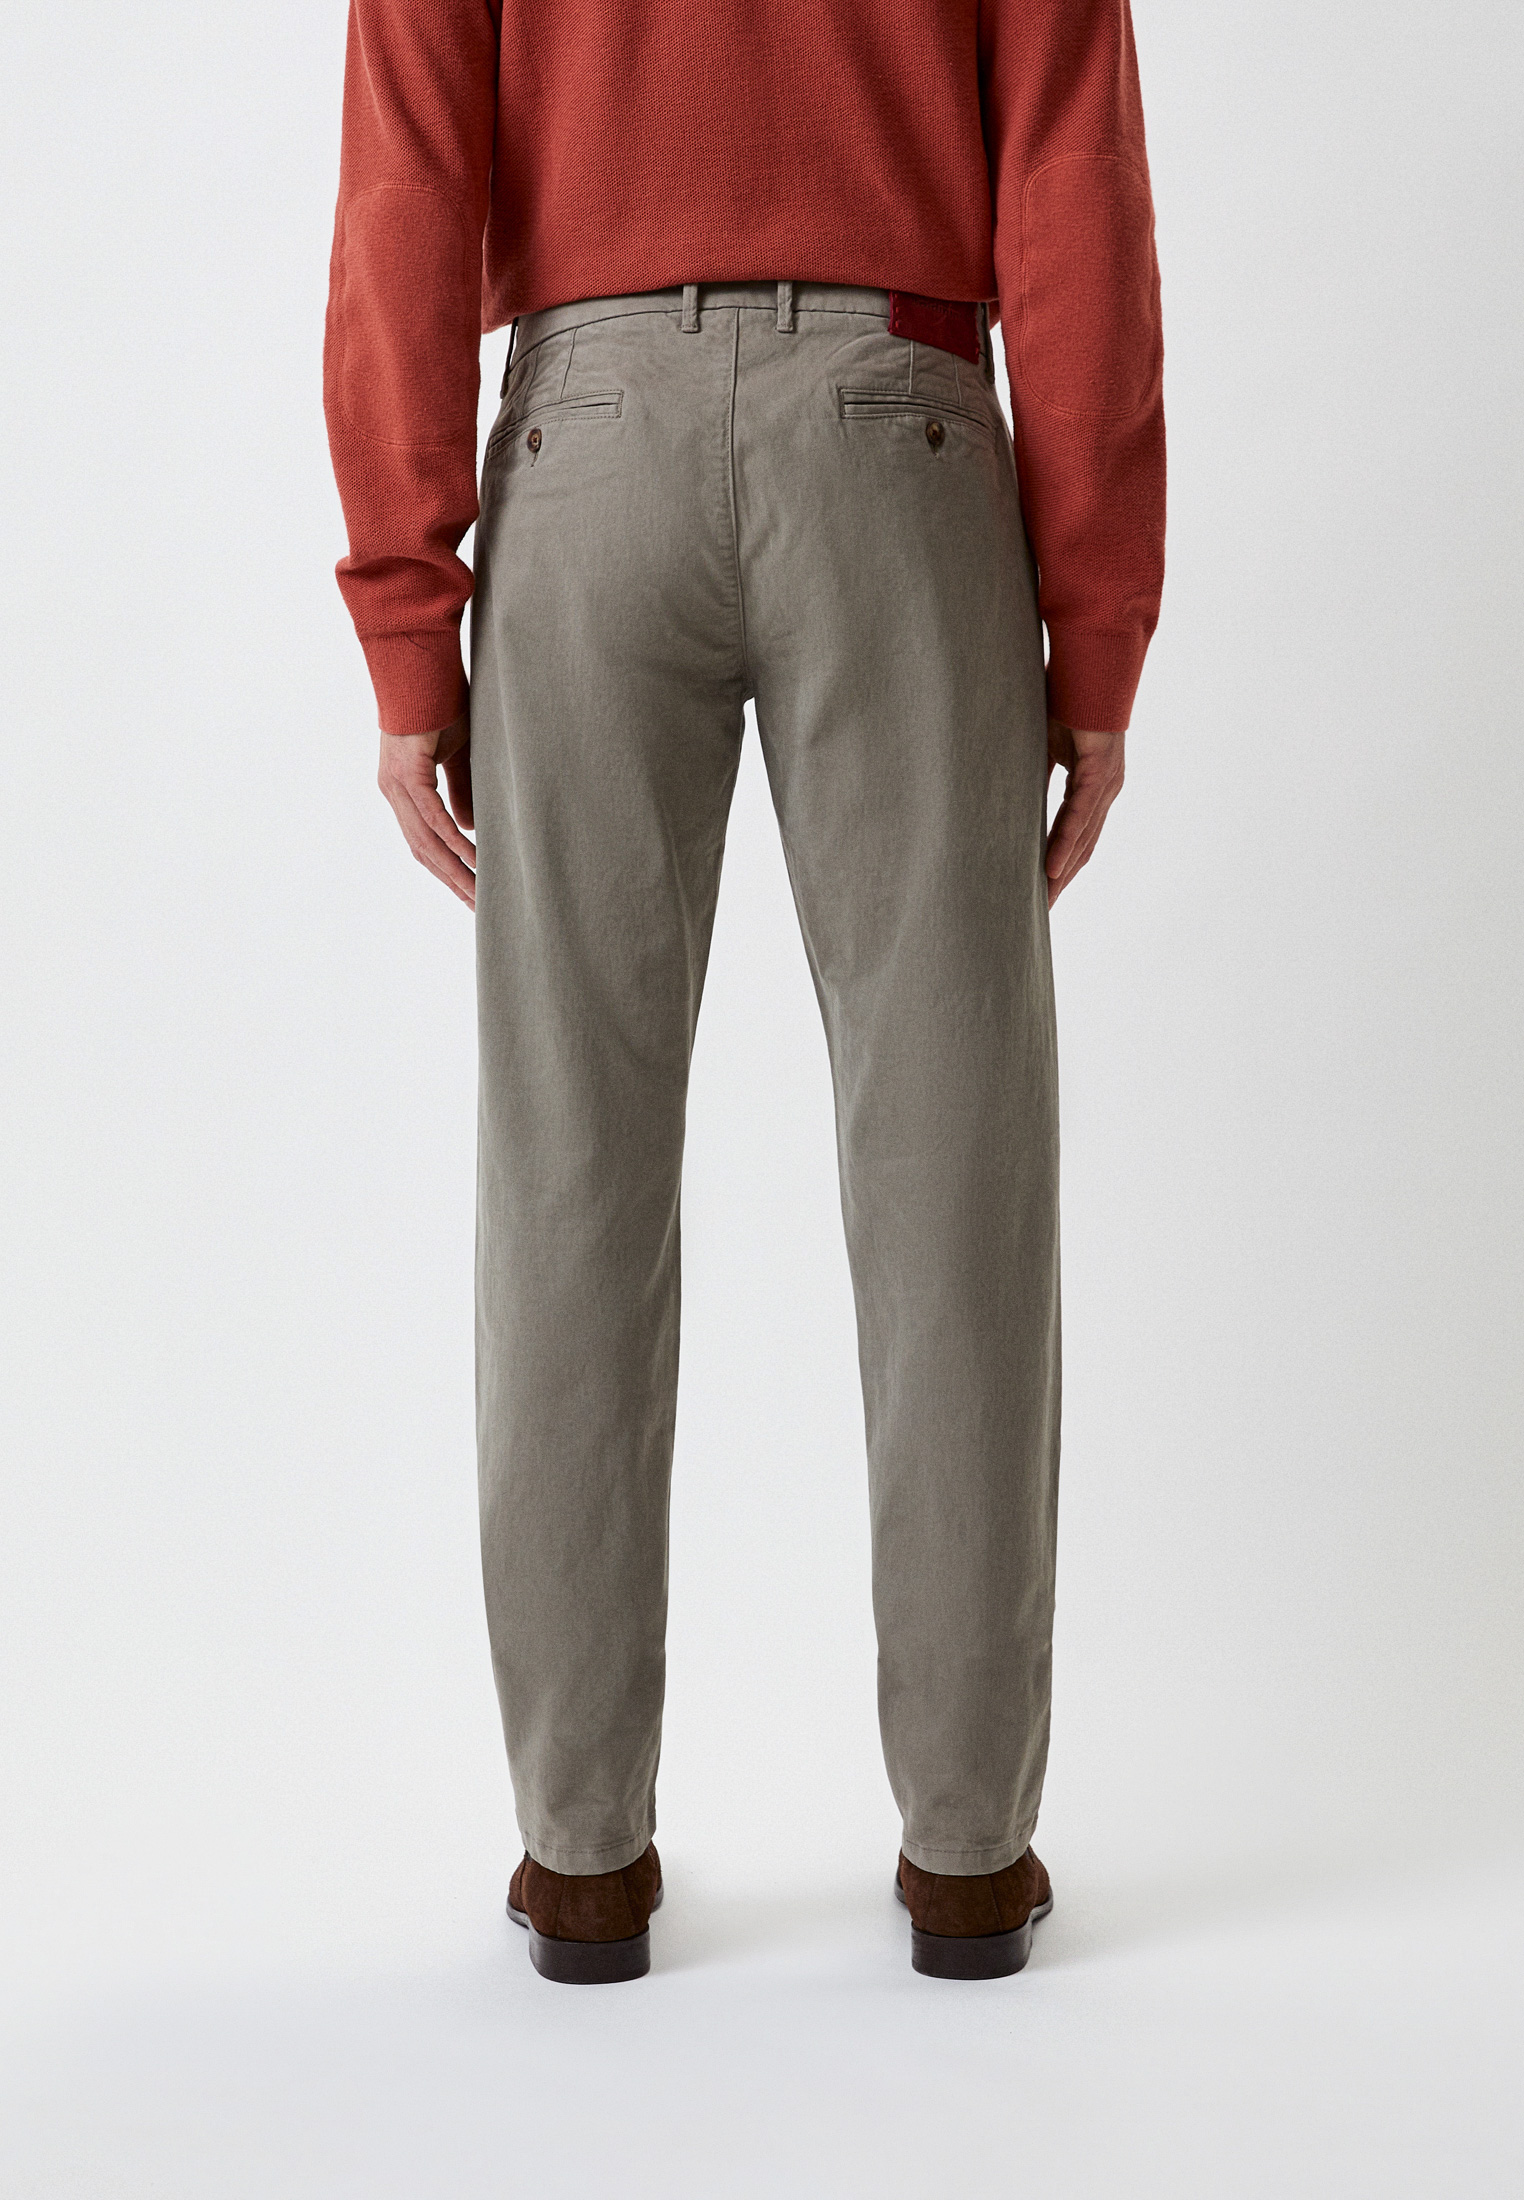 Мужские повседневные брюки Baldinini (Балдинини) M10: изображение 3